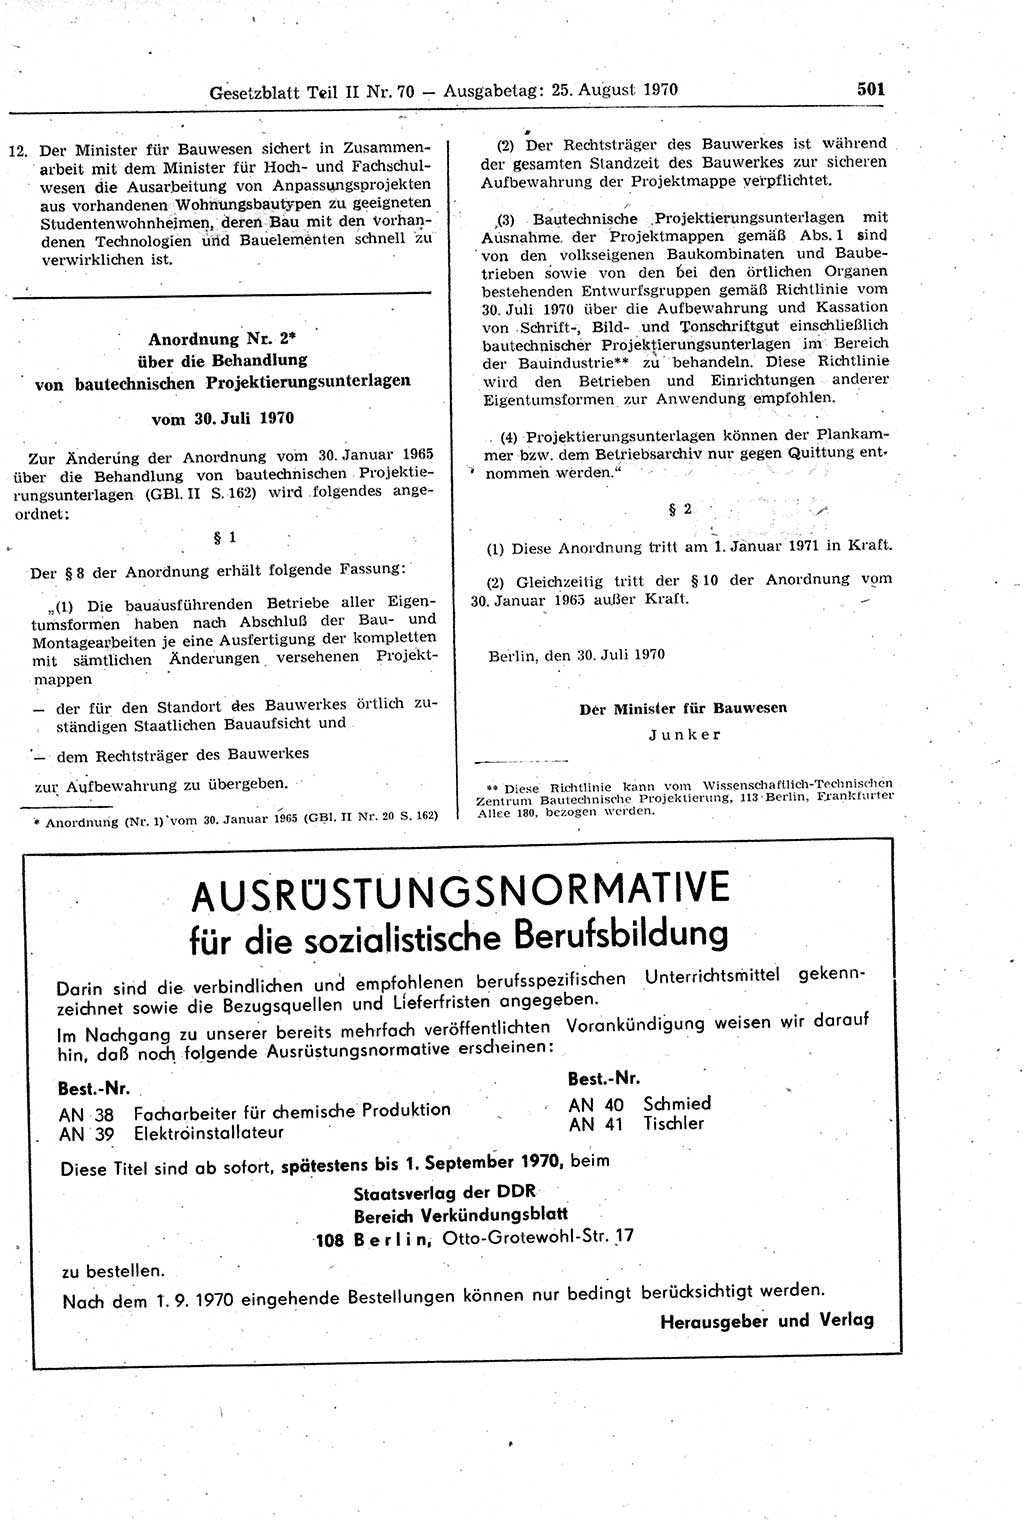 Gesetzblatt (GBl.) der Deutschen Demokratischen Republik (DDR) Teil ⅠⅠ 1970, Seite 501 (GBl. DDR ⅠⅠ 1970, S. 501)